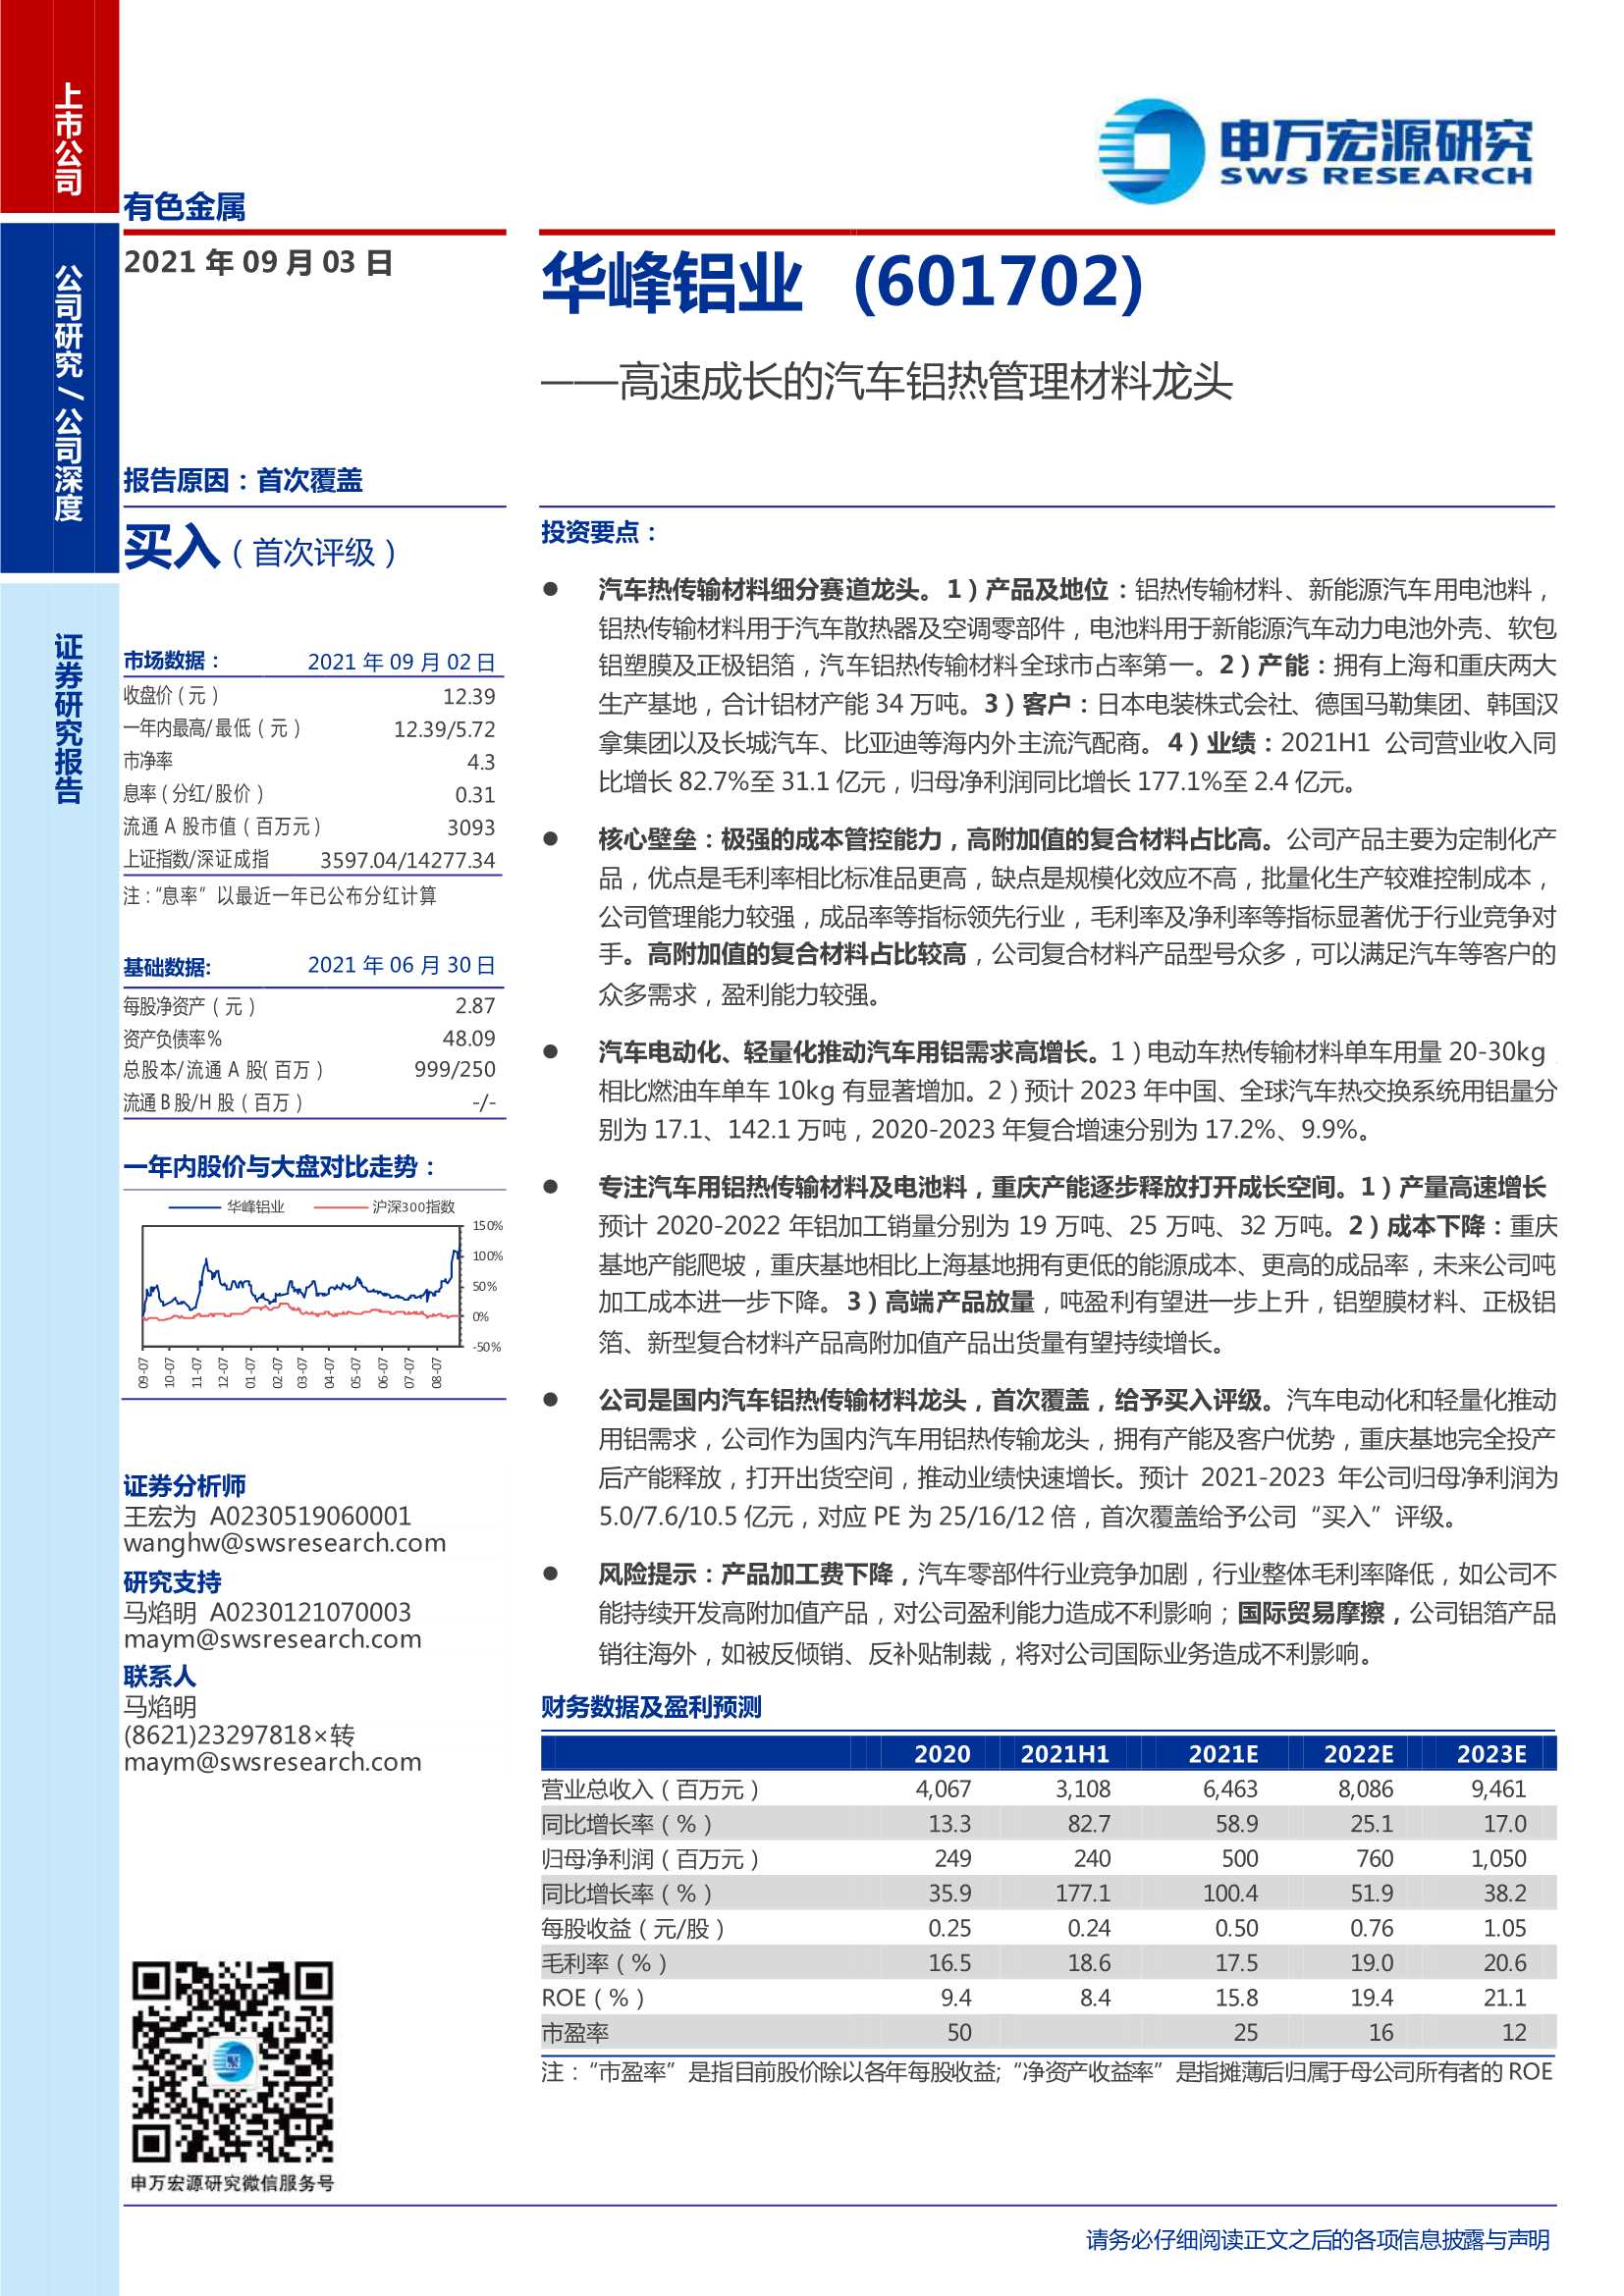 申万宏源-华峰铝业-601702-高速成长的汽车铝热管理材料龙头-20210903-24页